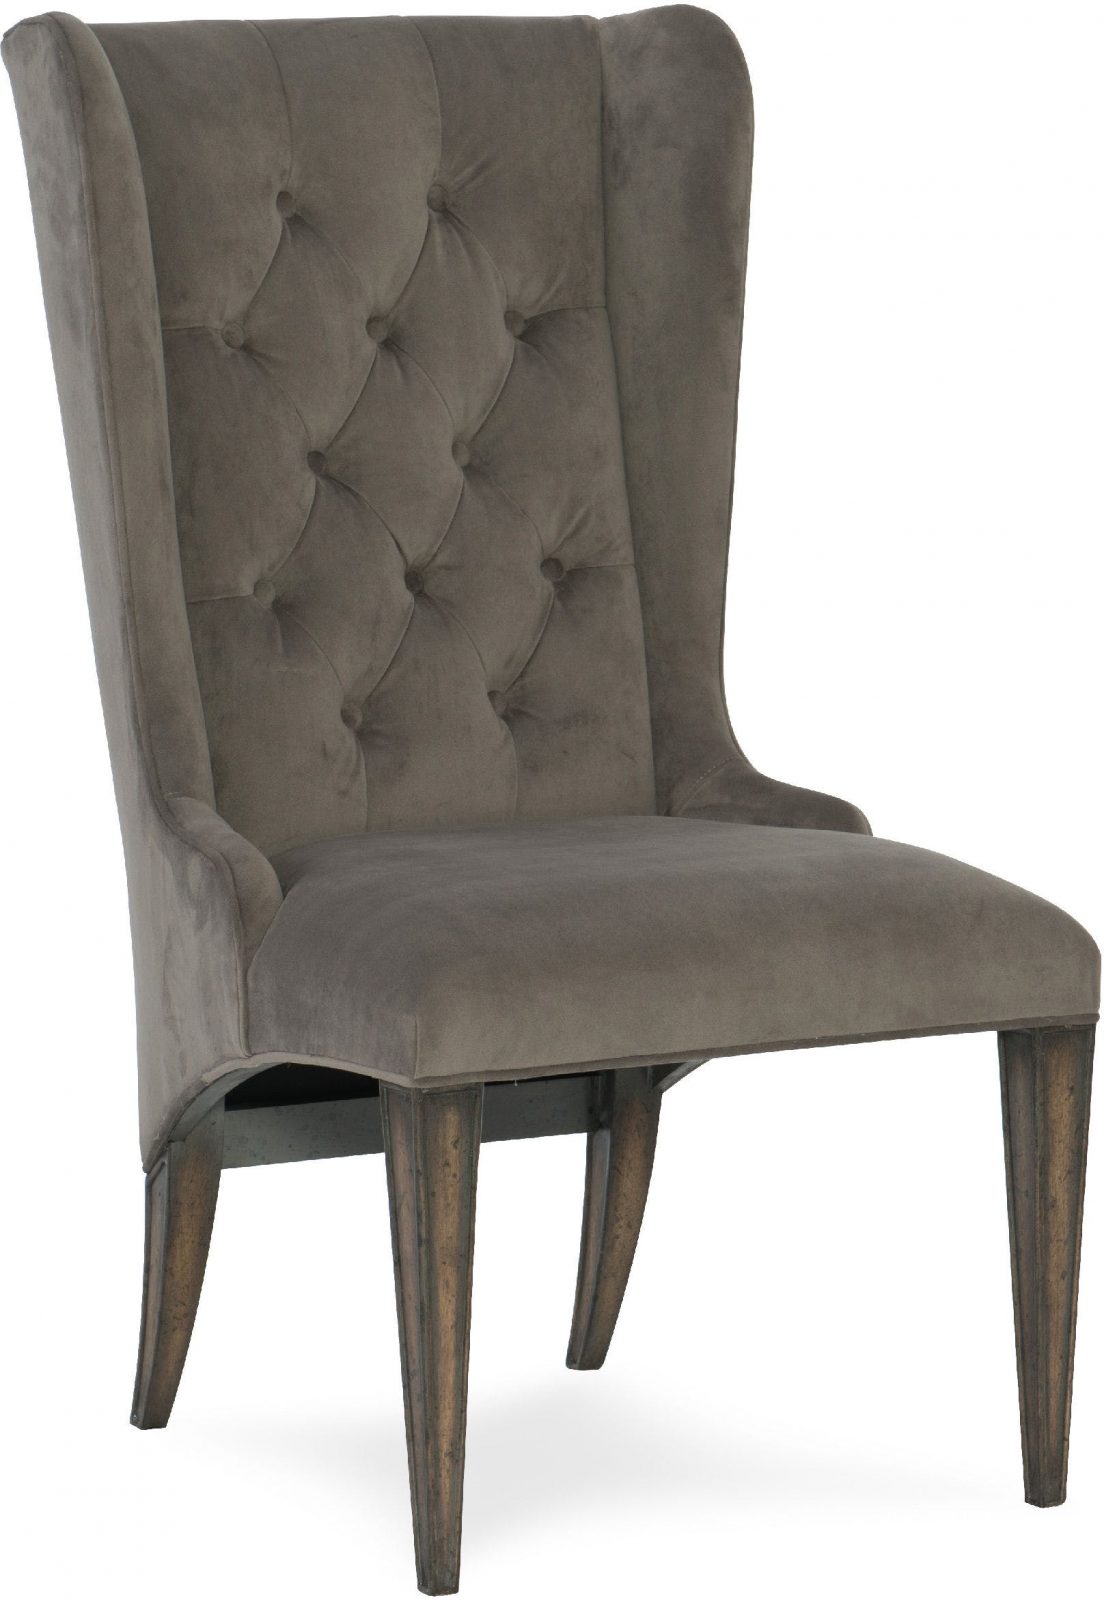 Arabella Upholstered host chair